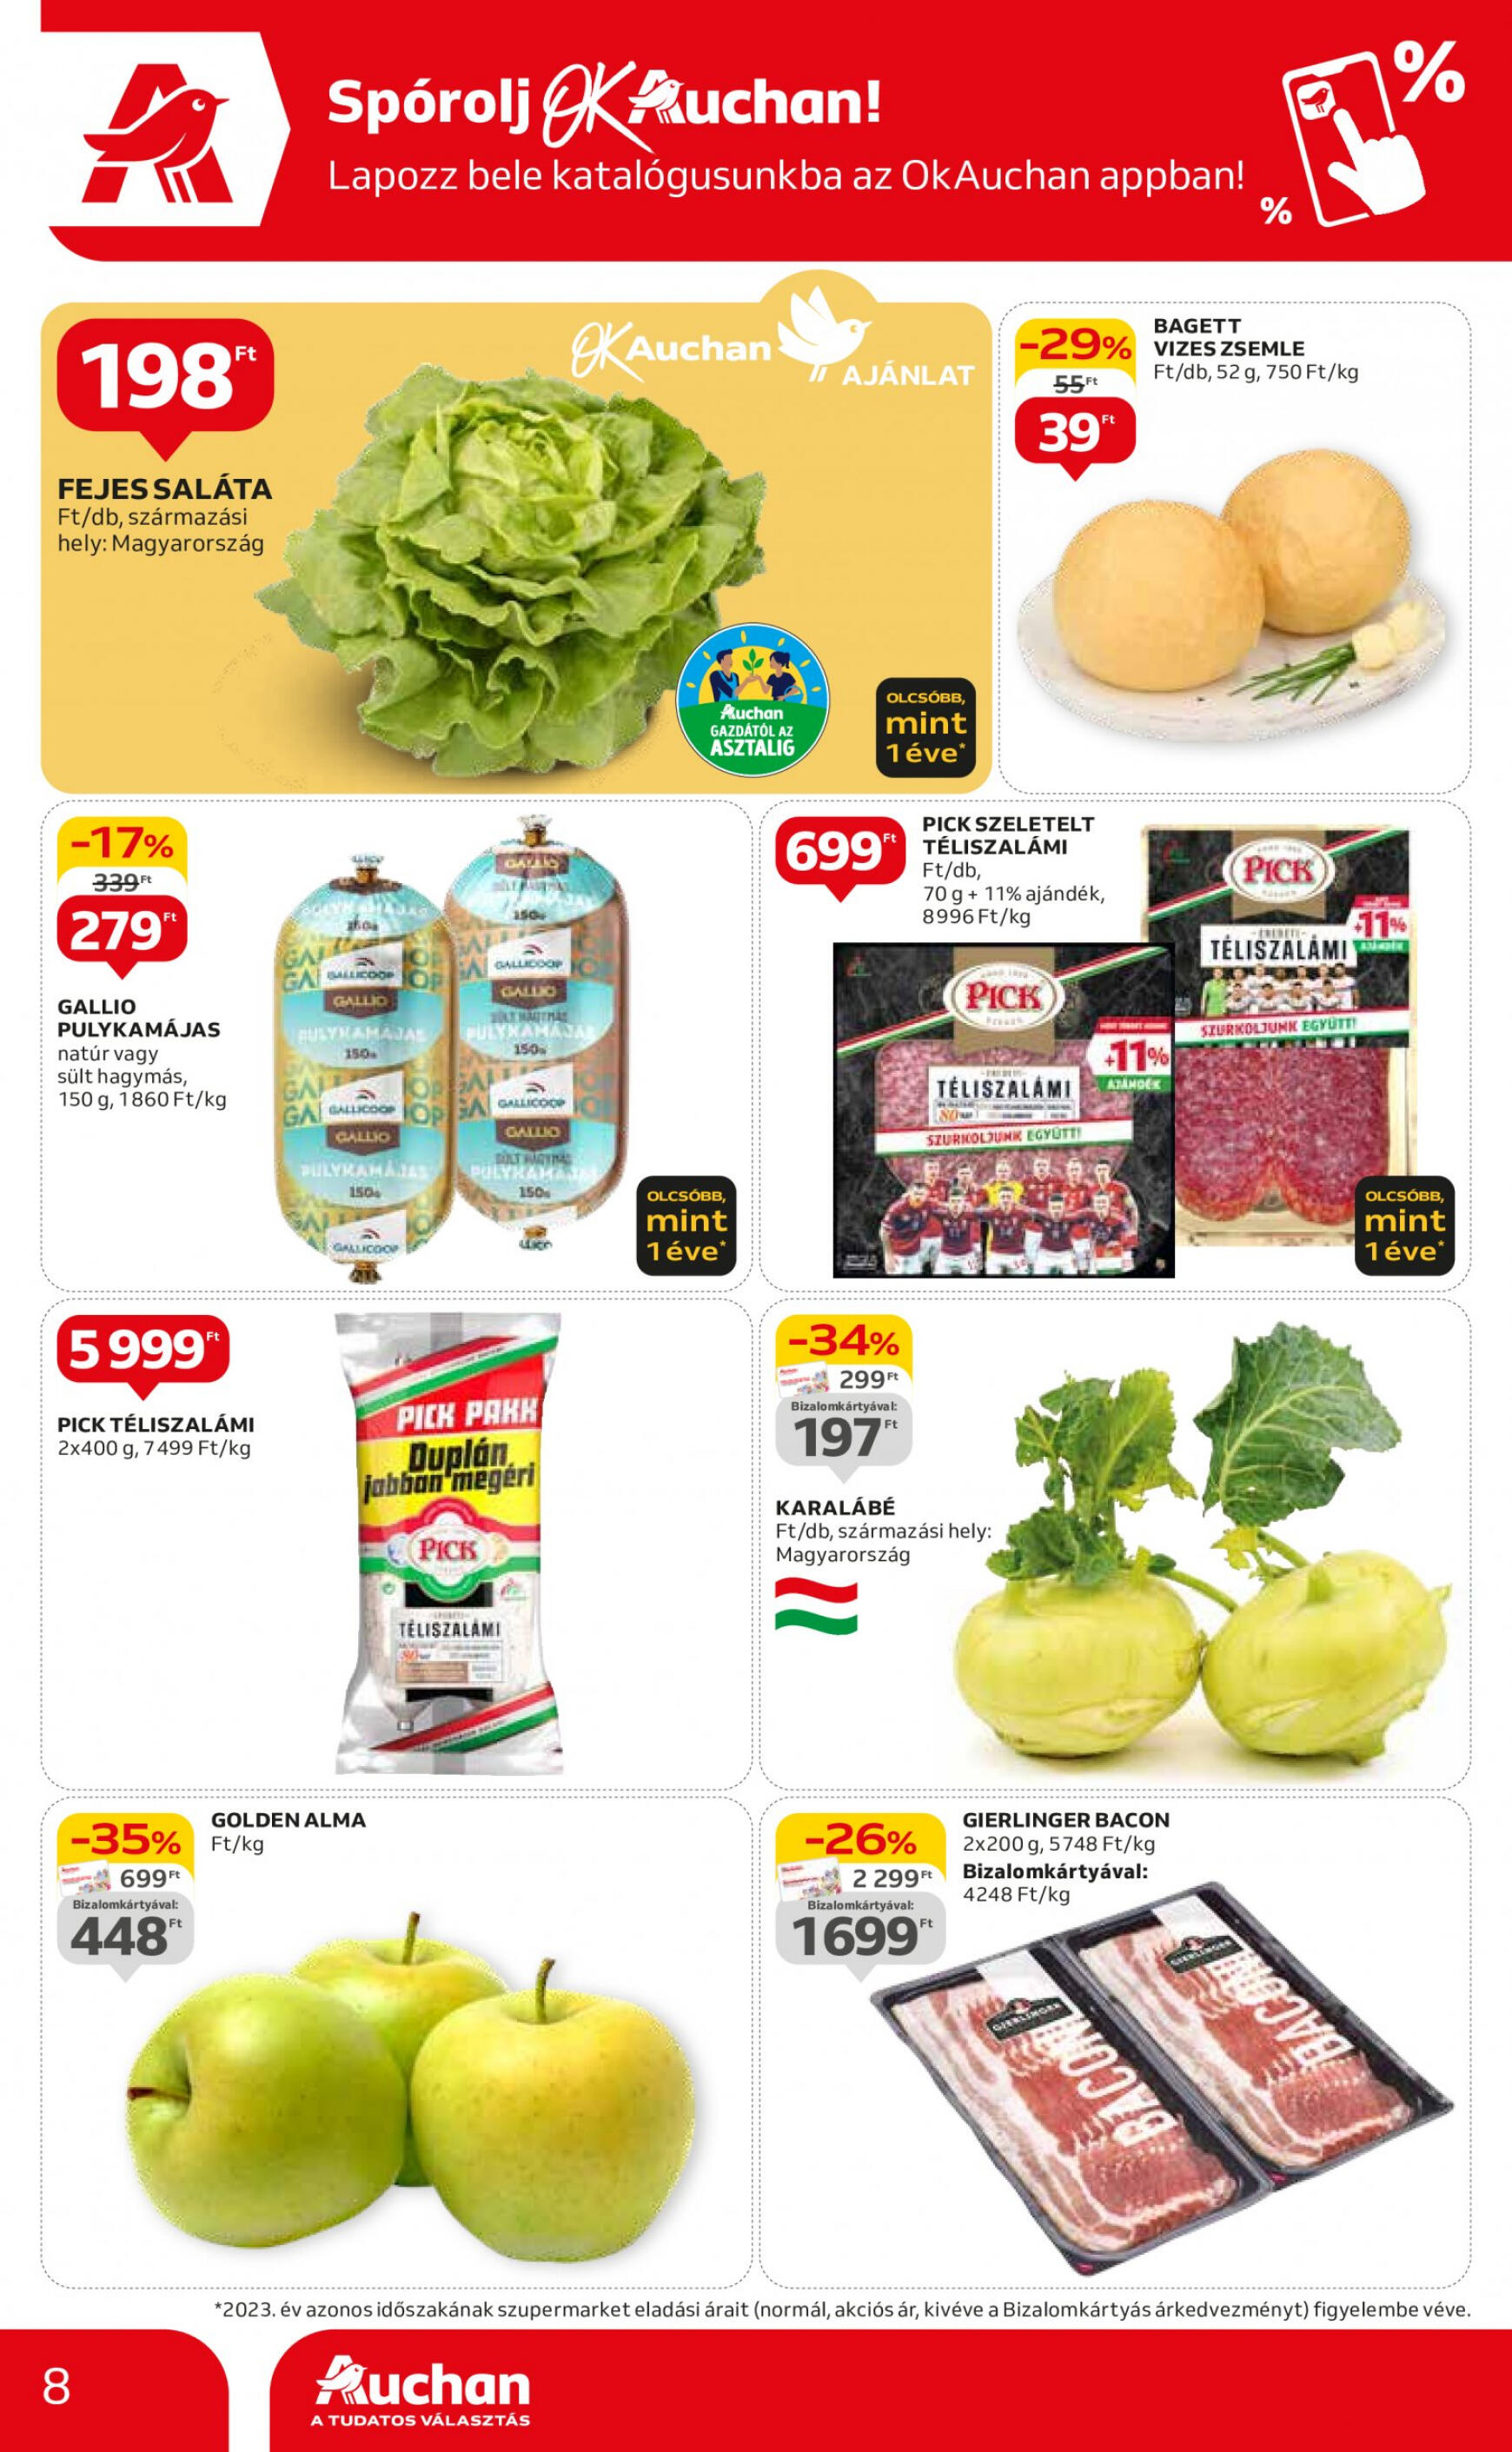 auchan - Aktuális újság Auchan szupermarket 05.09. - 05.15. - page: 8